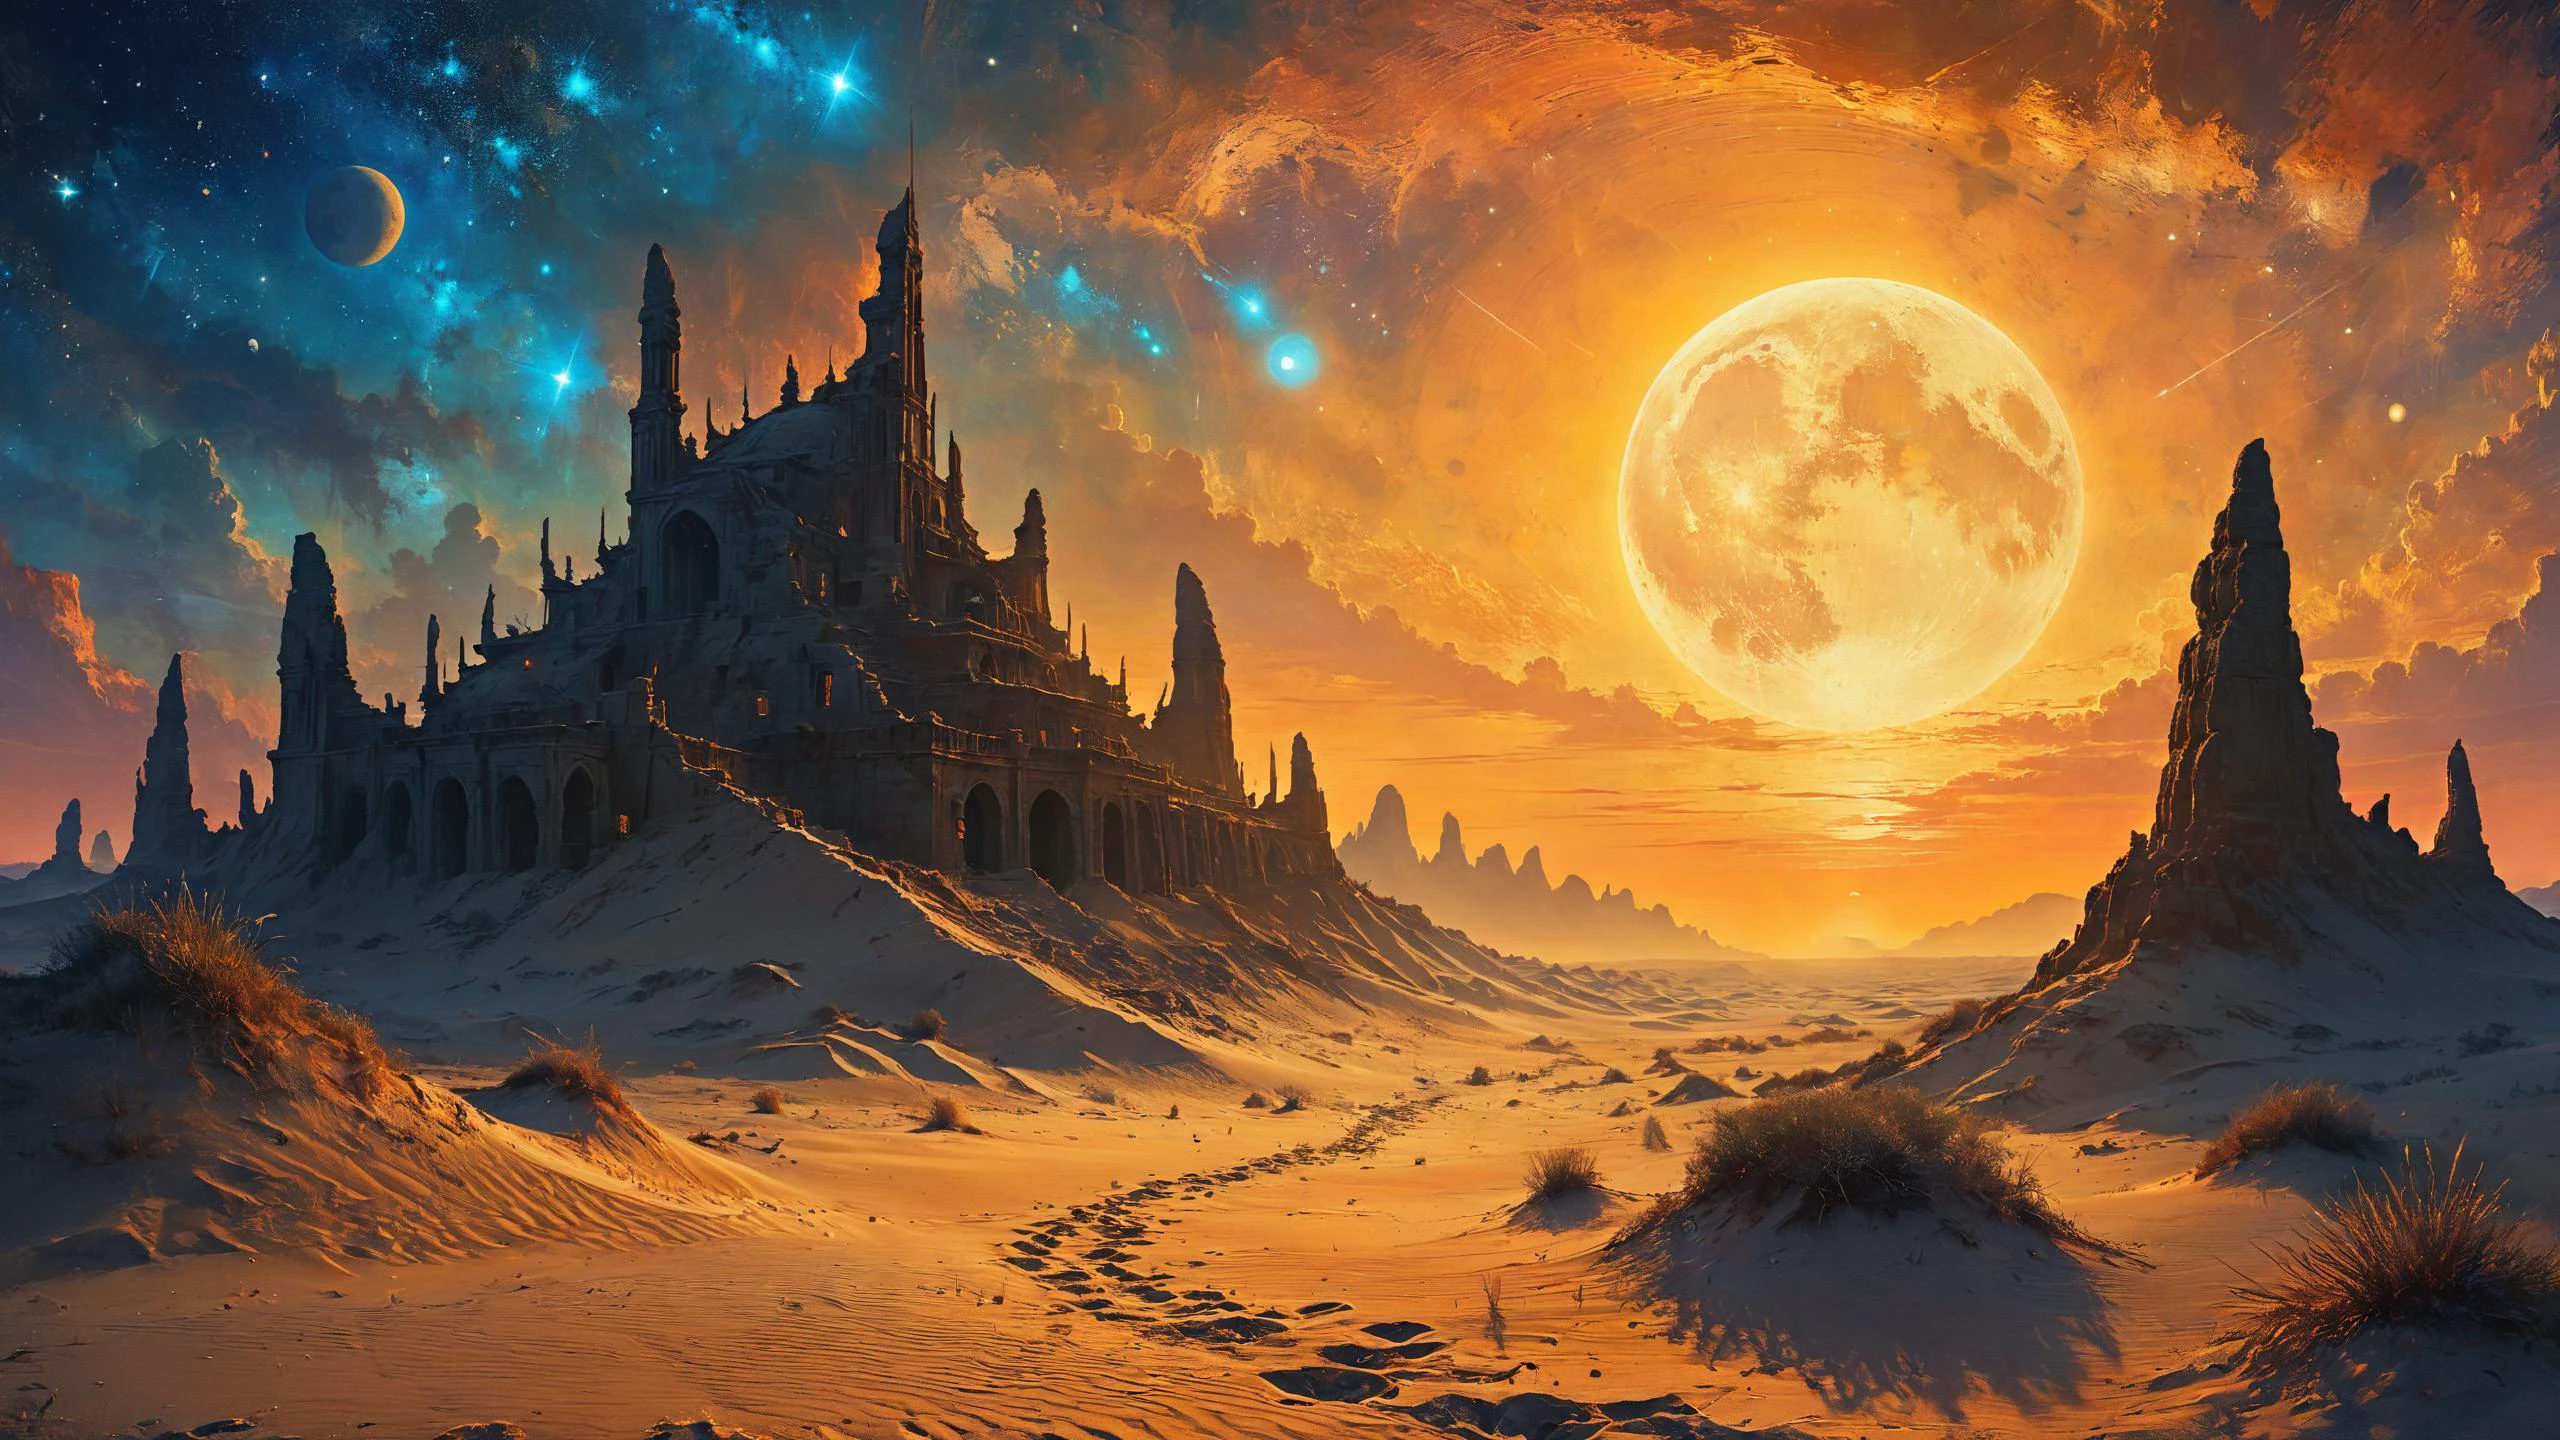 Руины инопланетной цивилизации, Песчаные дюны движутся под светом биолюминесцентных лун на заднем плане, суровый солнечный свет, Мечтательная атмосфера